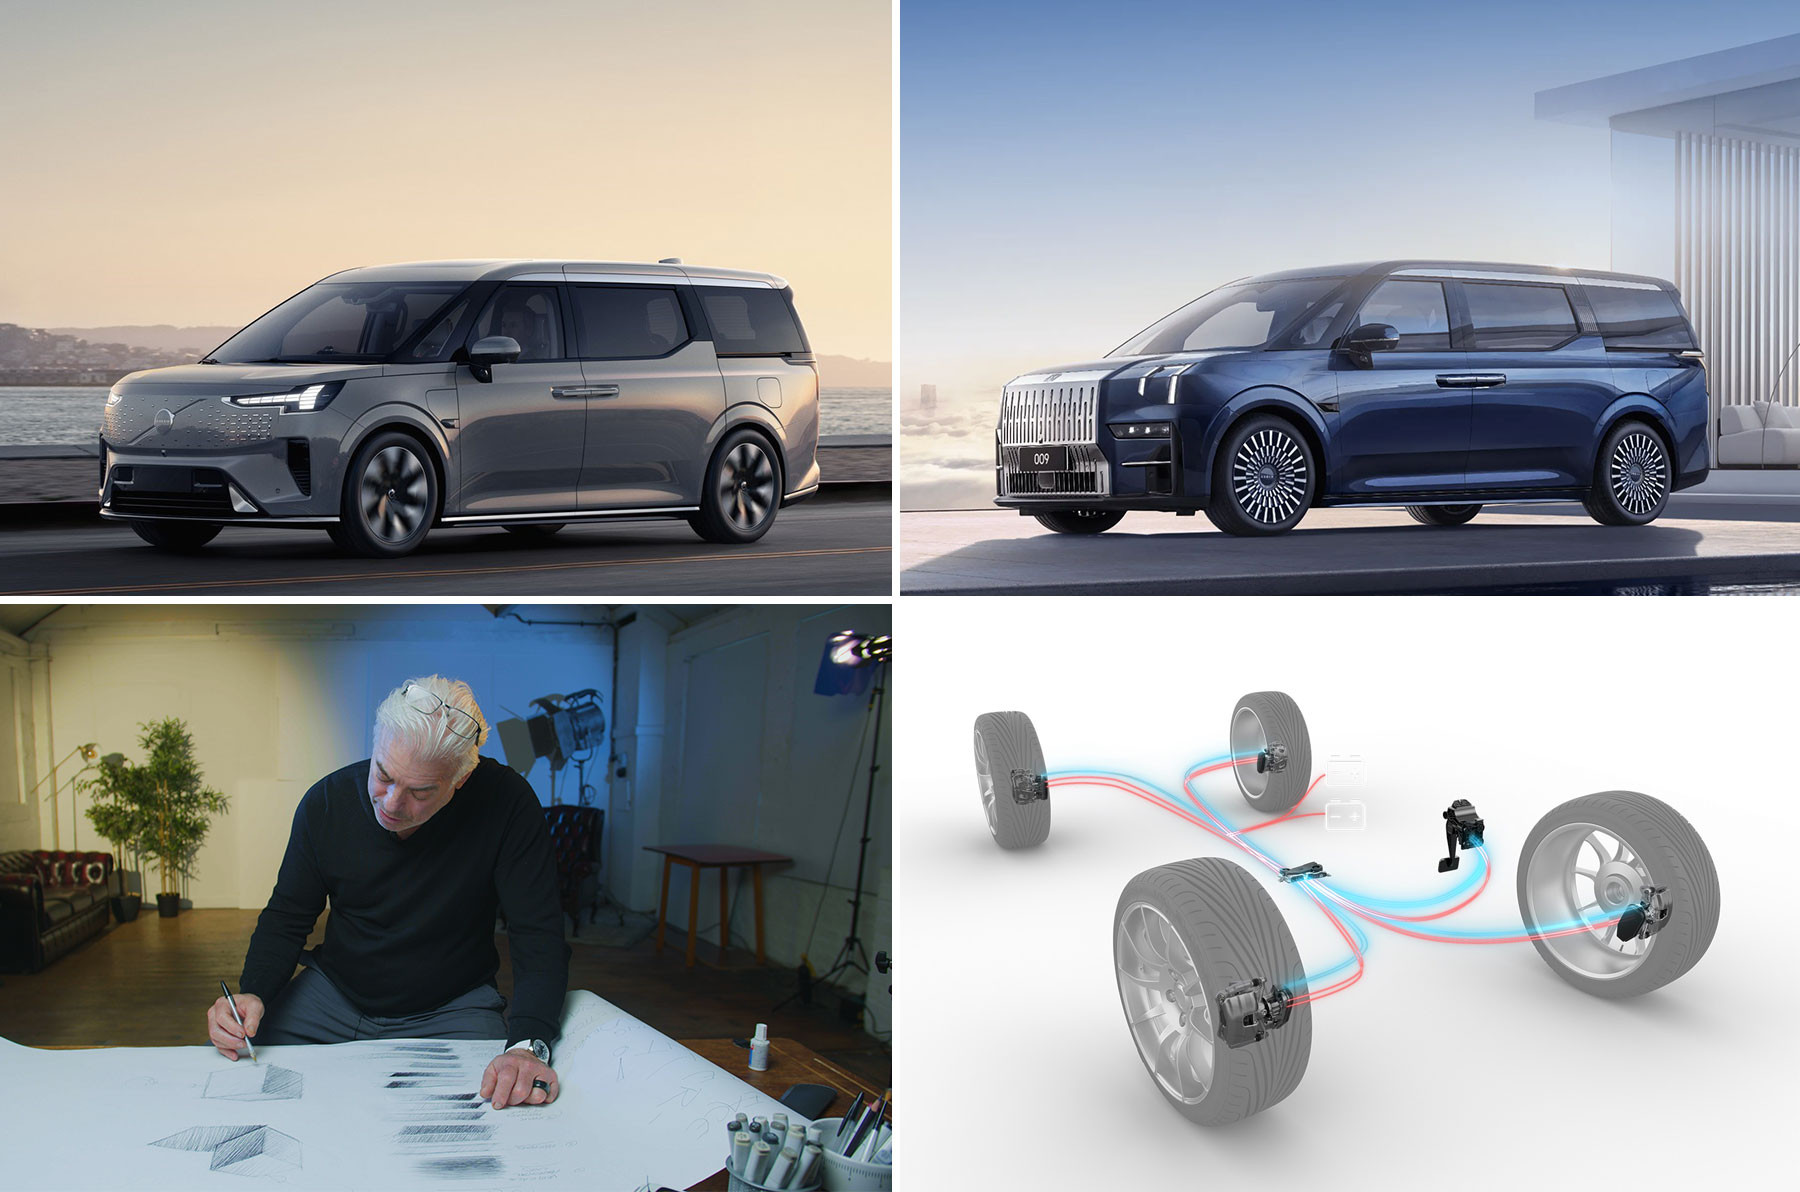 Dienstag Magazin: Weltpremiere des Volvo MPV EM90. Autodesign – von Frank Stephenson lernen. ZF – Ist die elektrische Bremse die Zukunft für Stromer?